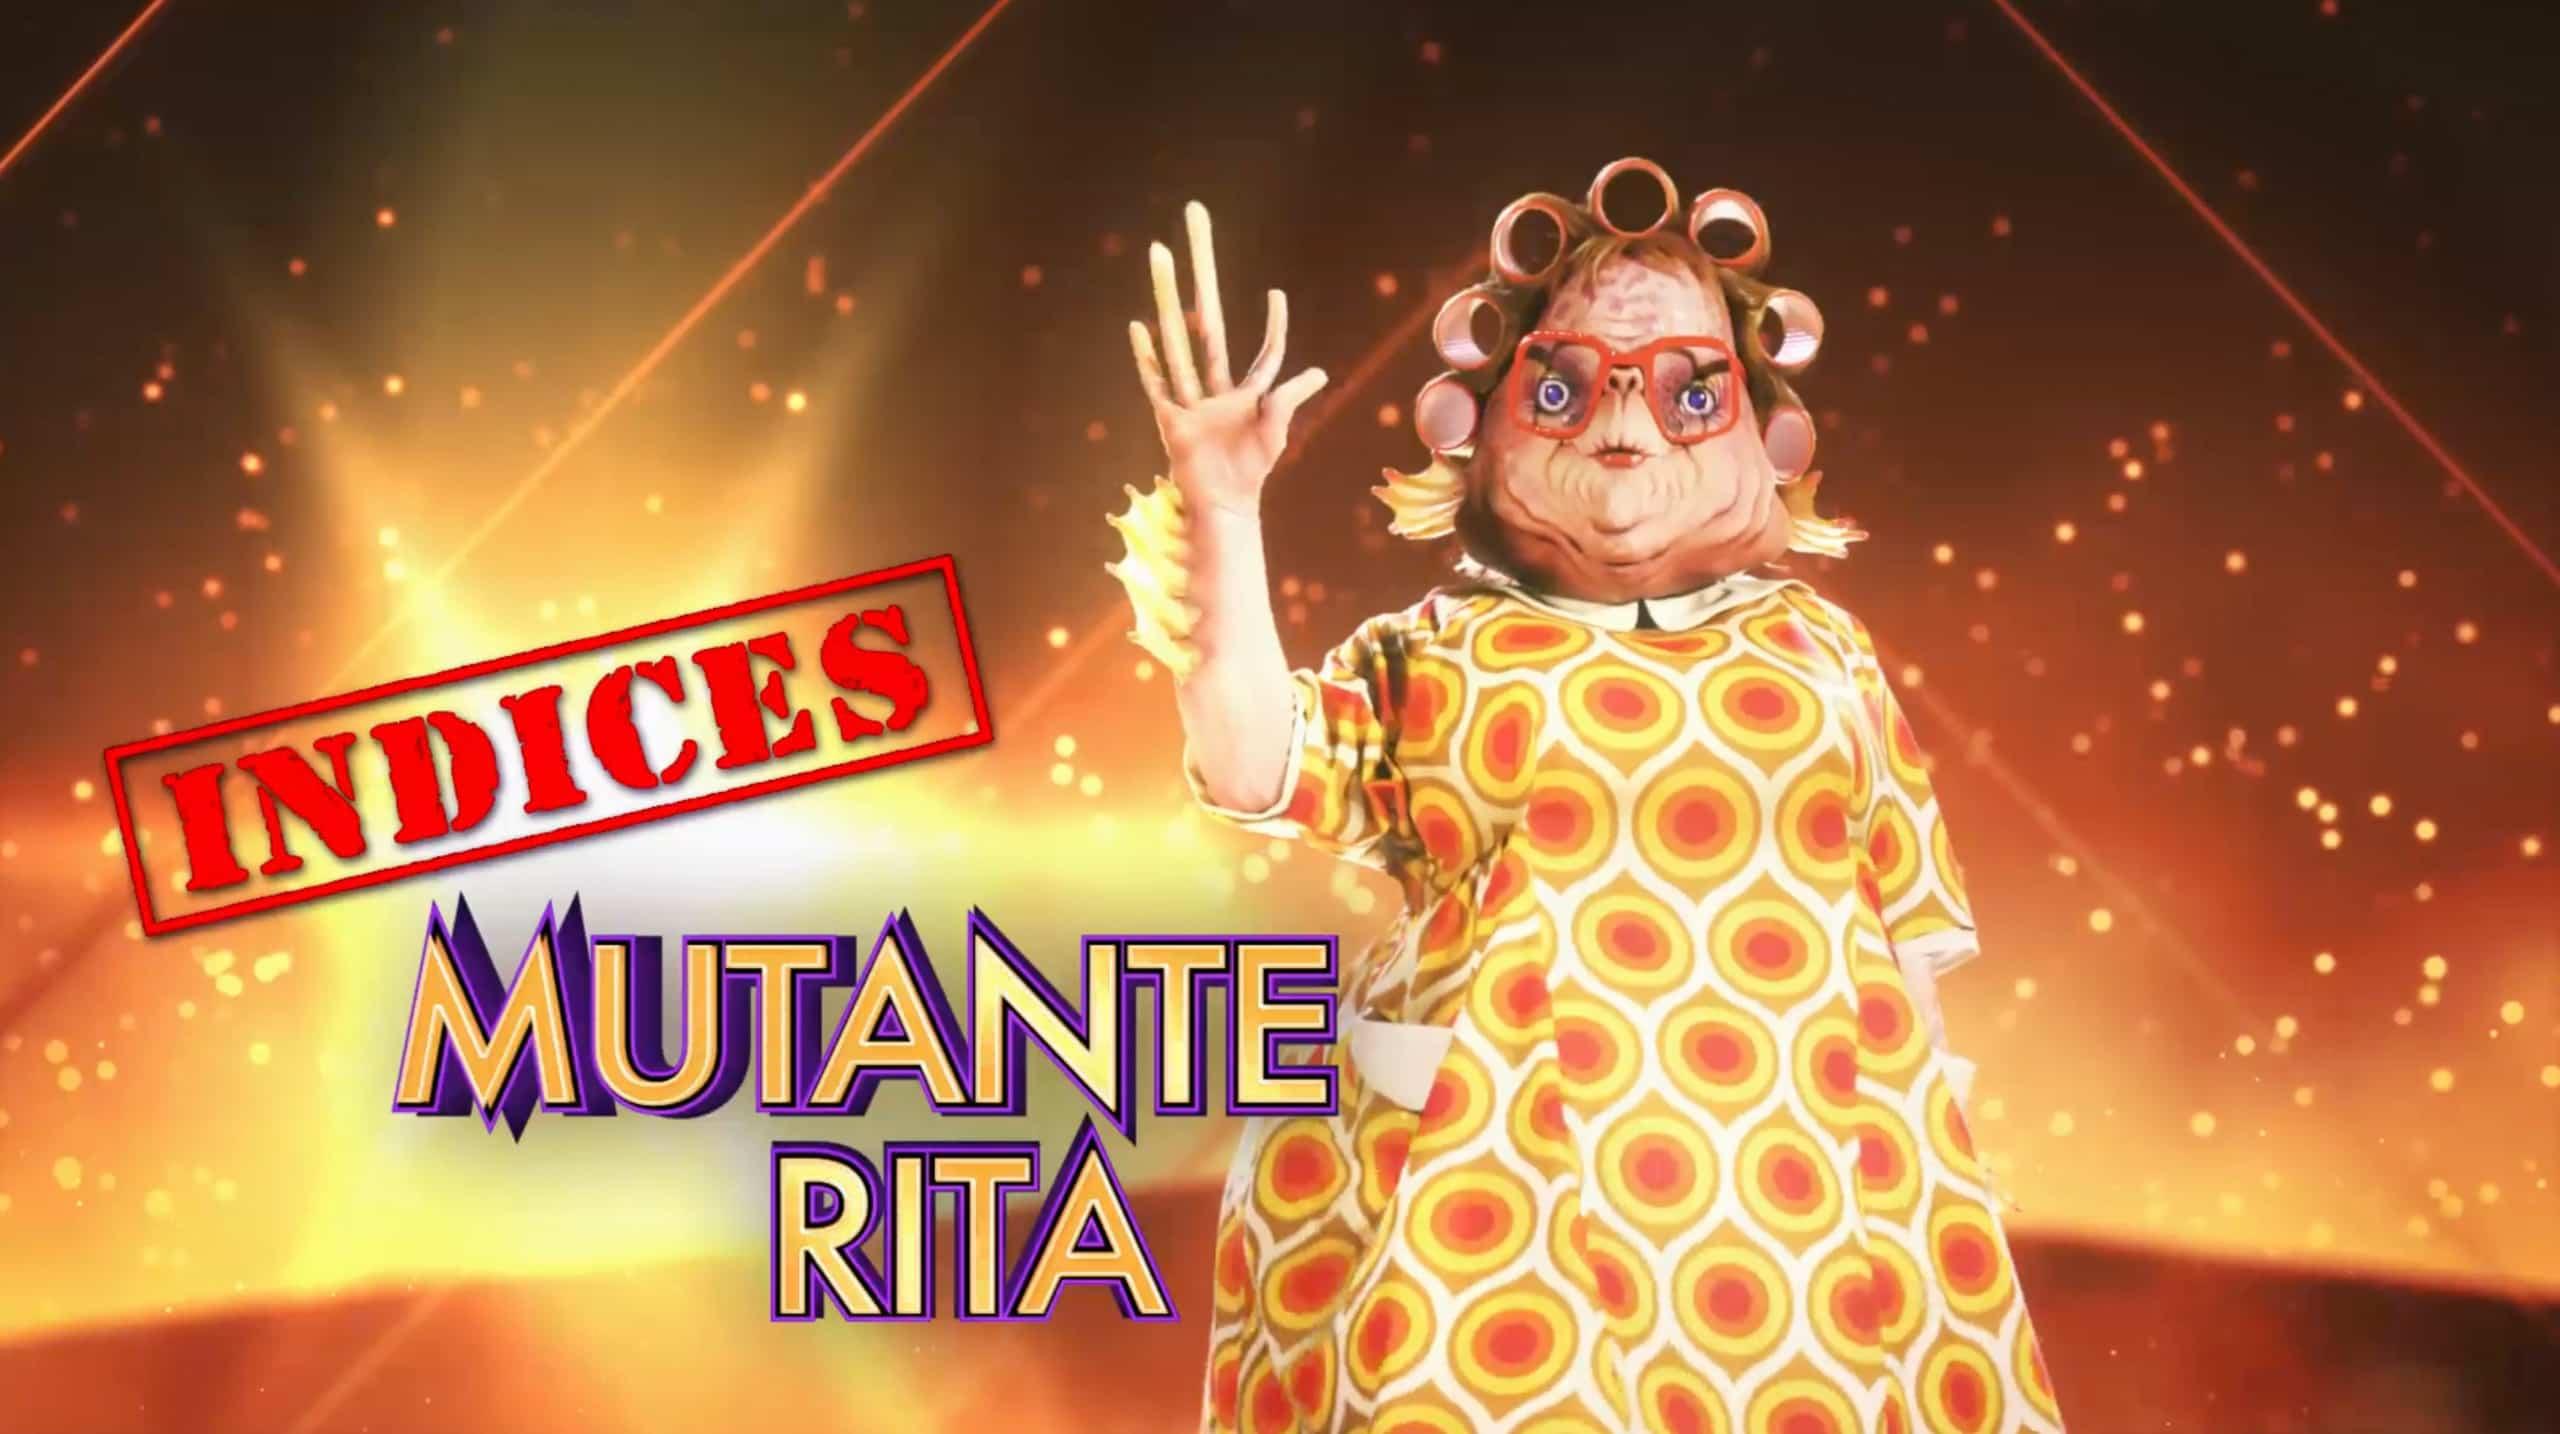 Mutante Rita - Indices 1